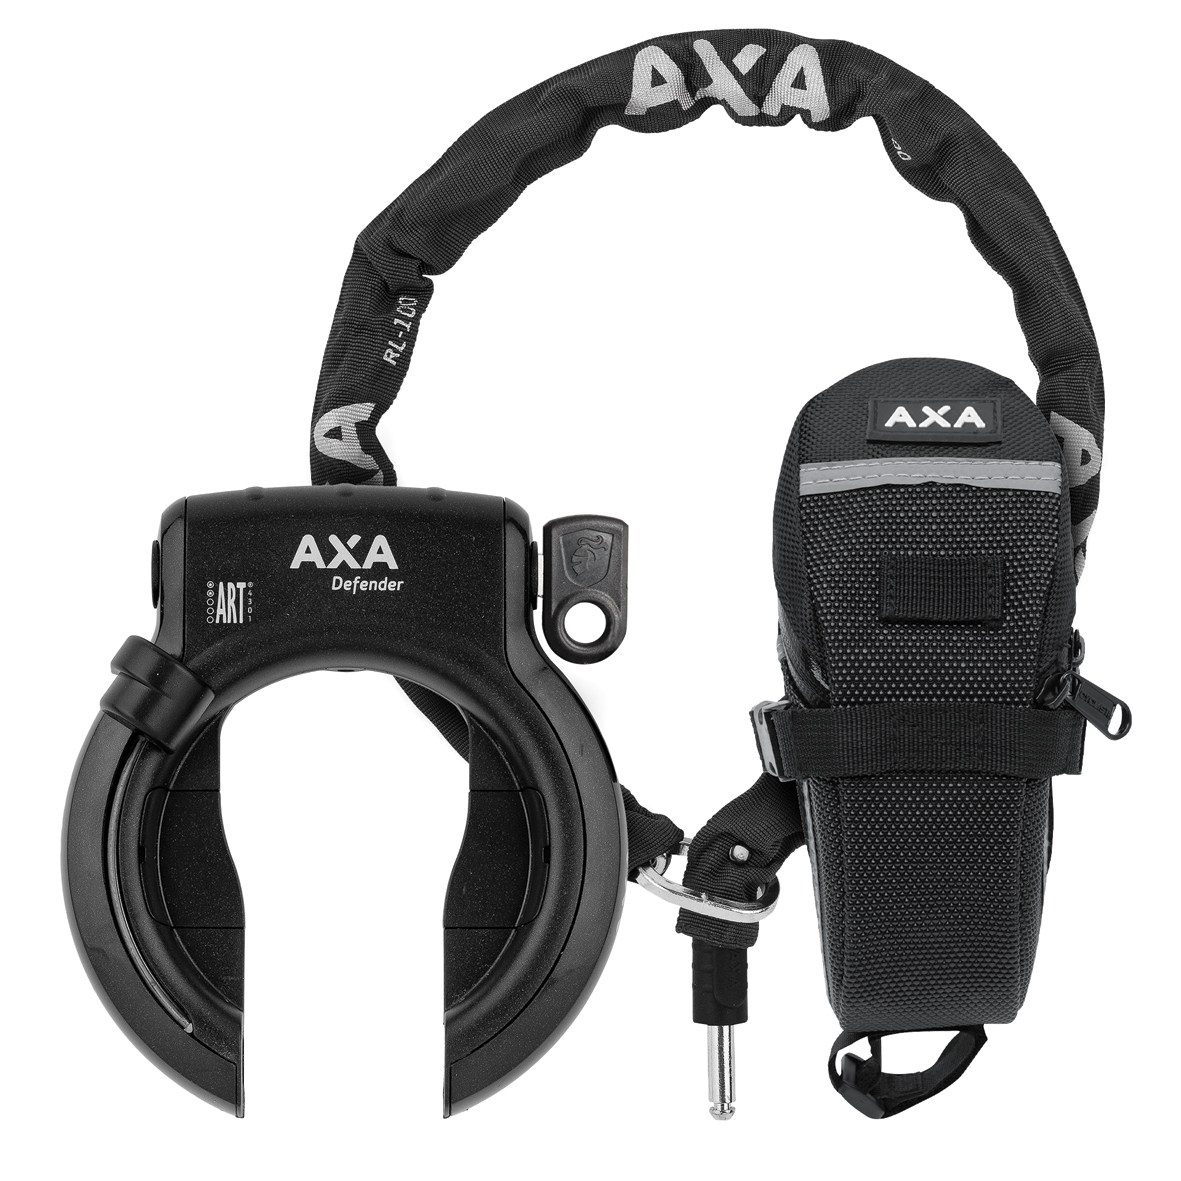 Keizer Impasse Voorkomen AXA Defender + RLC 100 + bag set | Producten